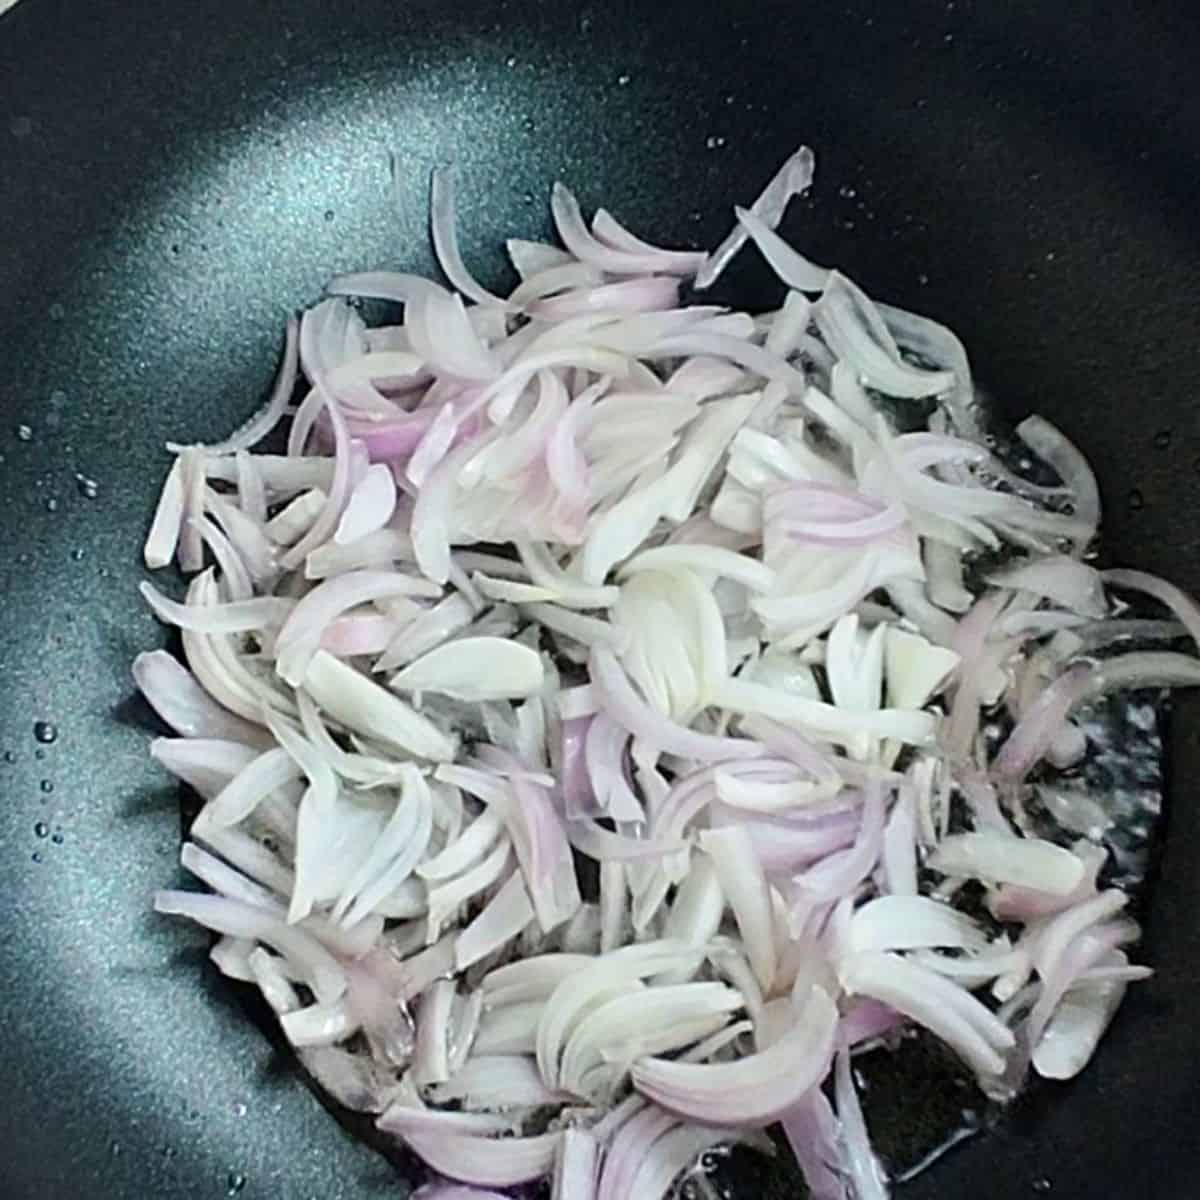 saute onions